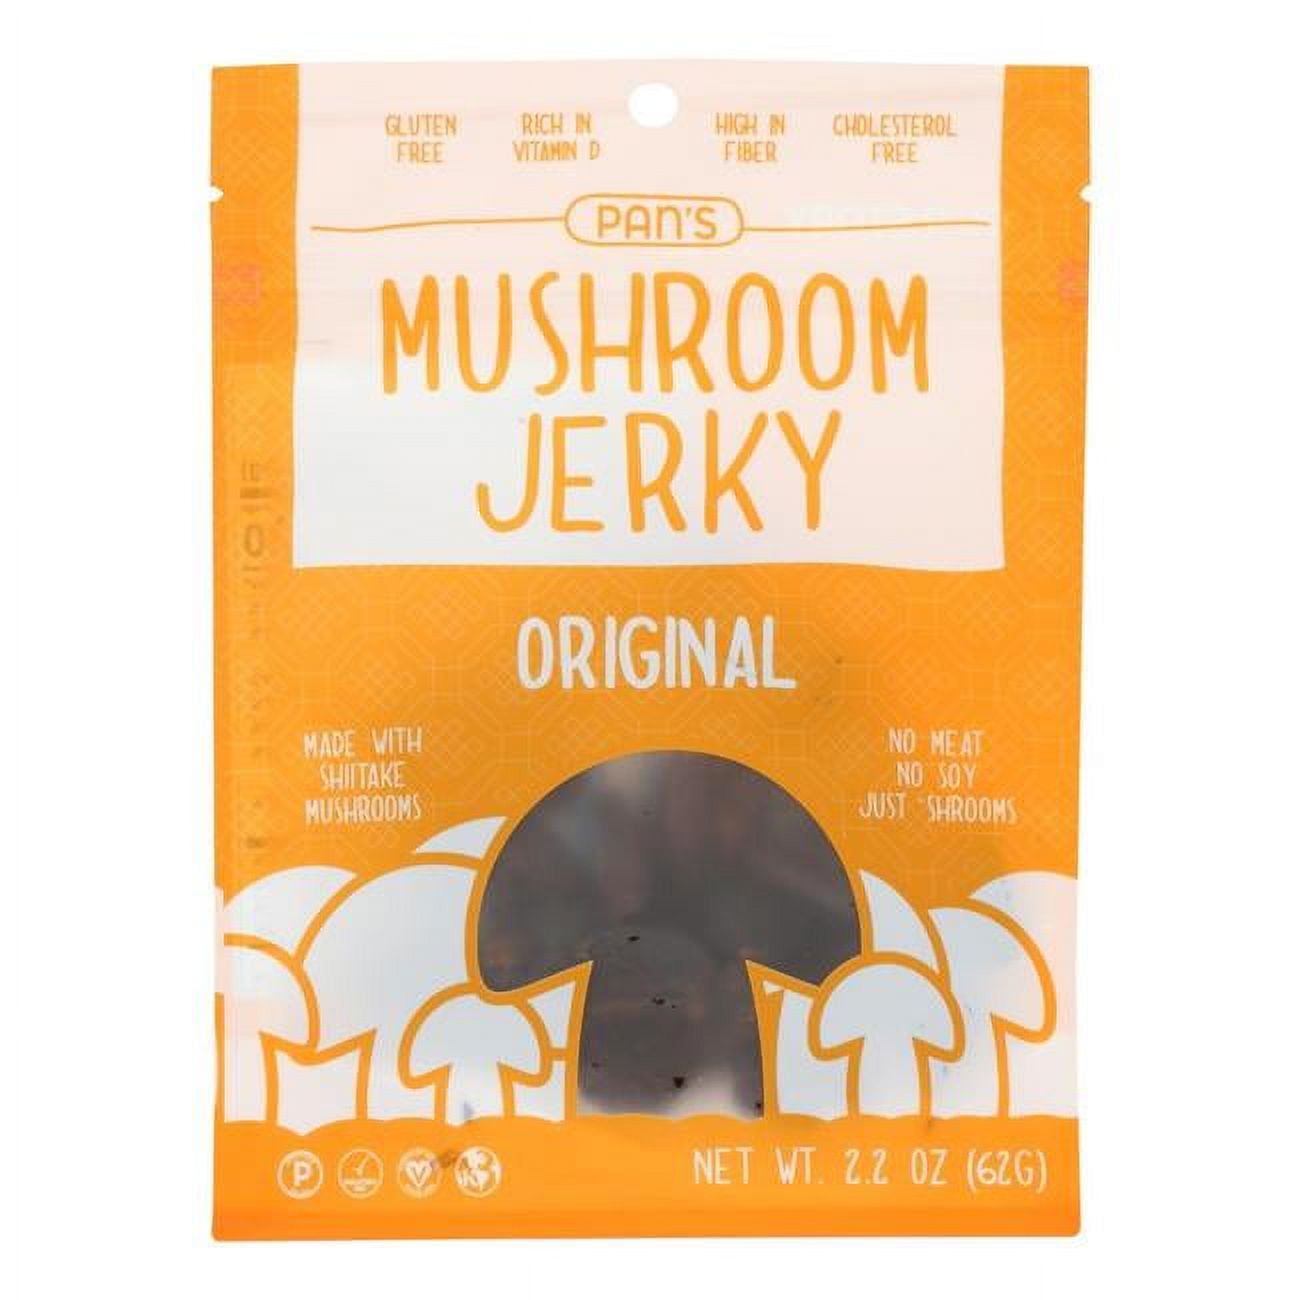 Pan's - Mushroom Jerky Original - 2.2 oz. - Walmart.com